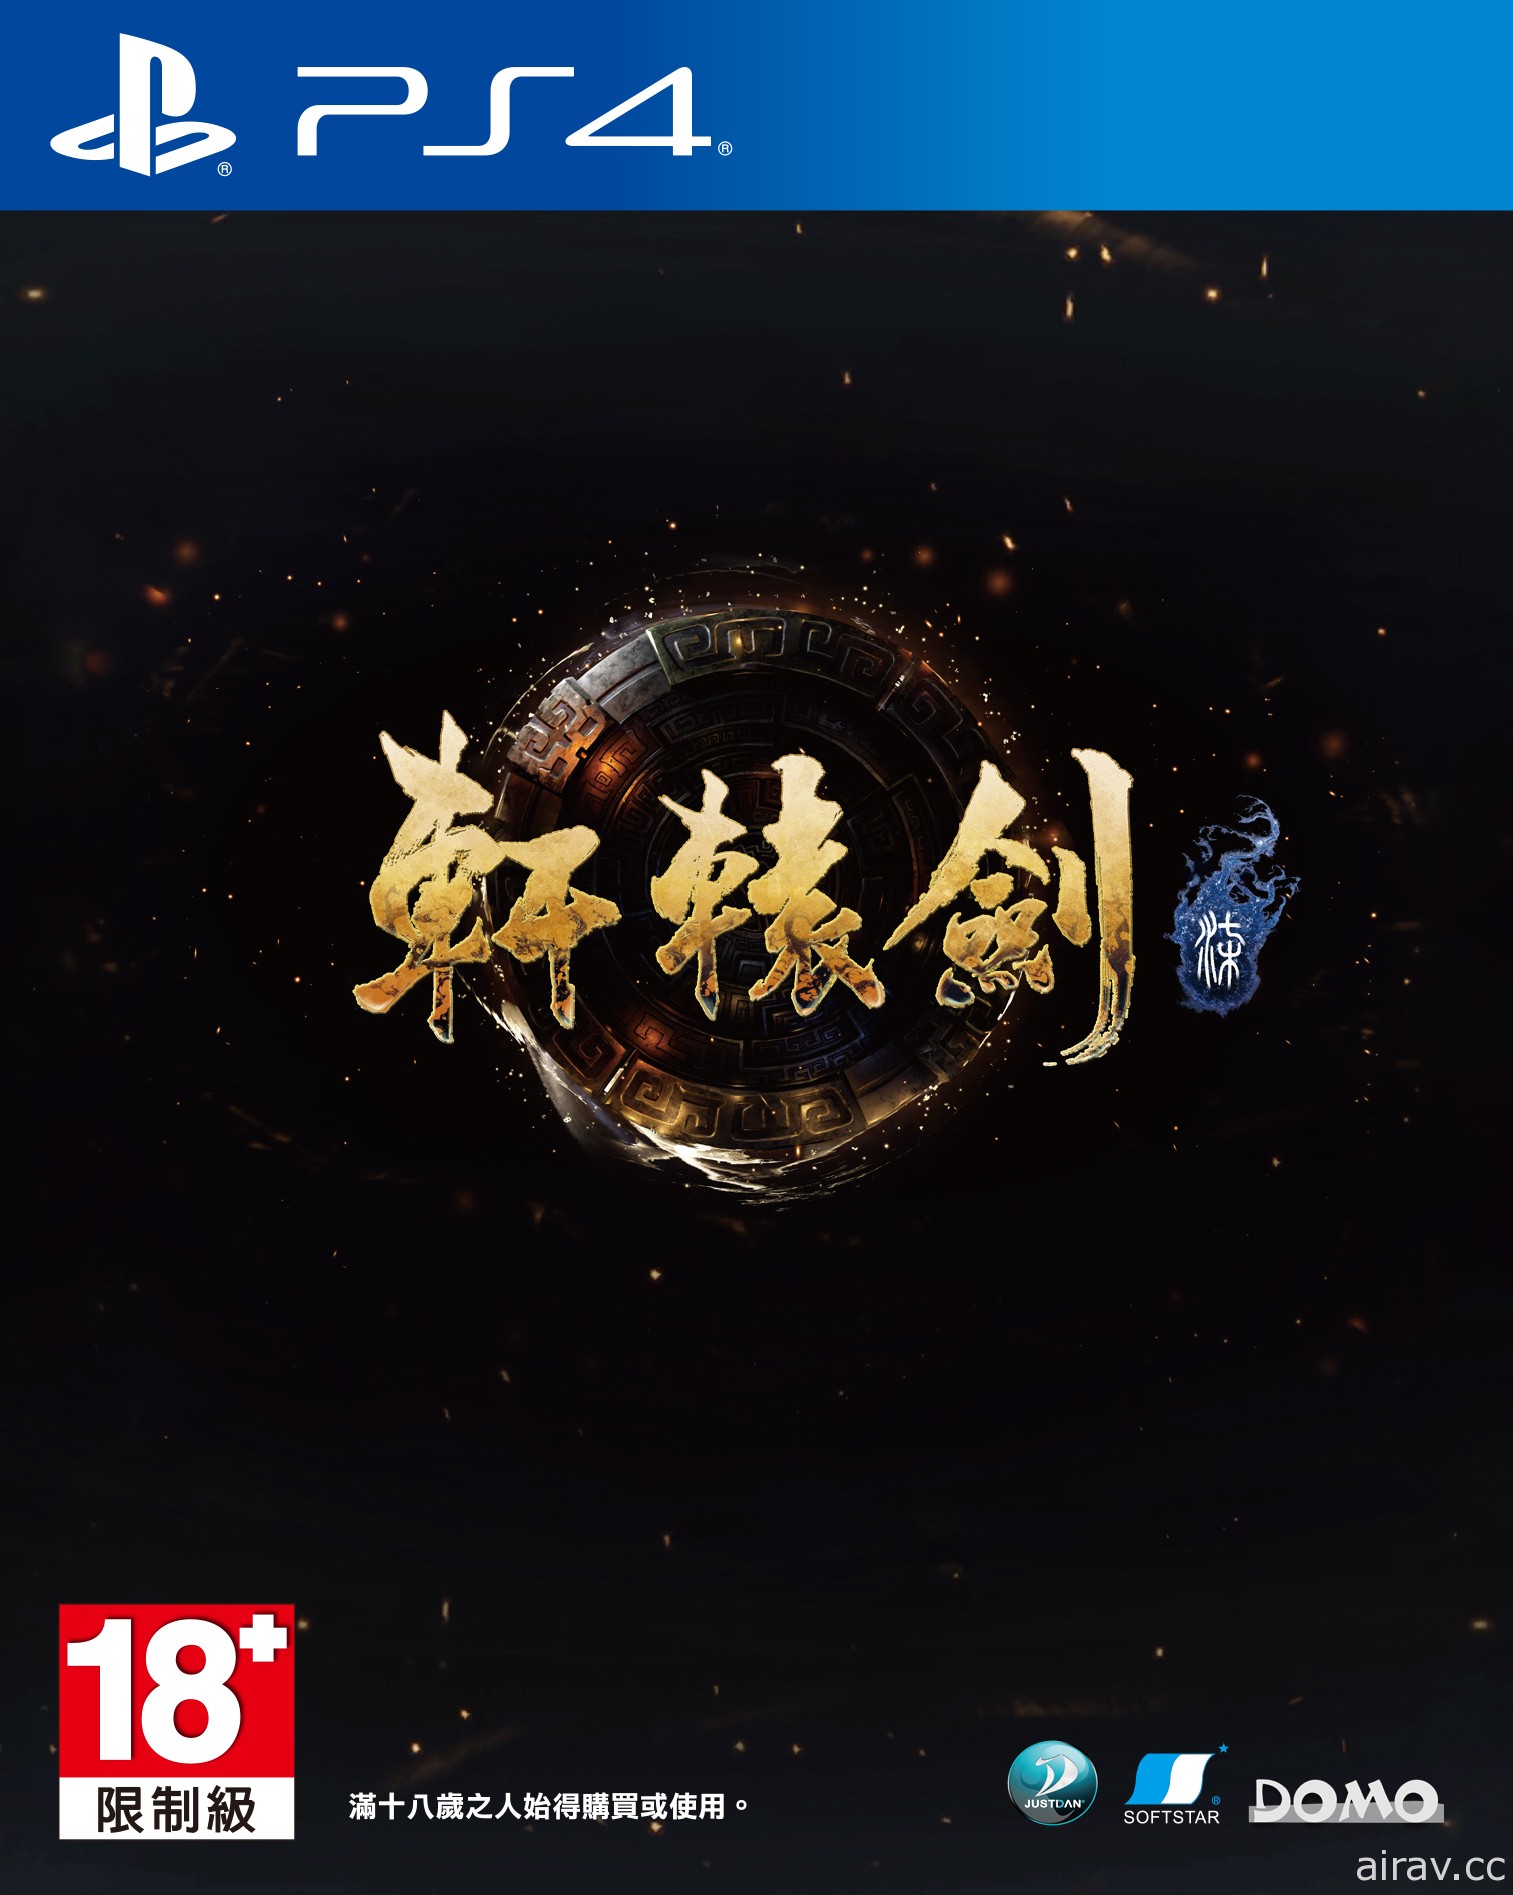 《轩辕剑柒》PS4 版预约特典、限定版首度公开！将独占日文配音并于发售后免费更新